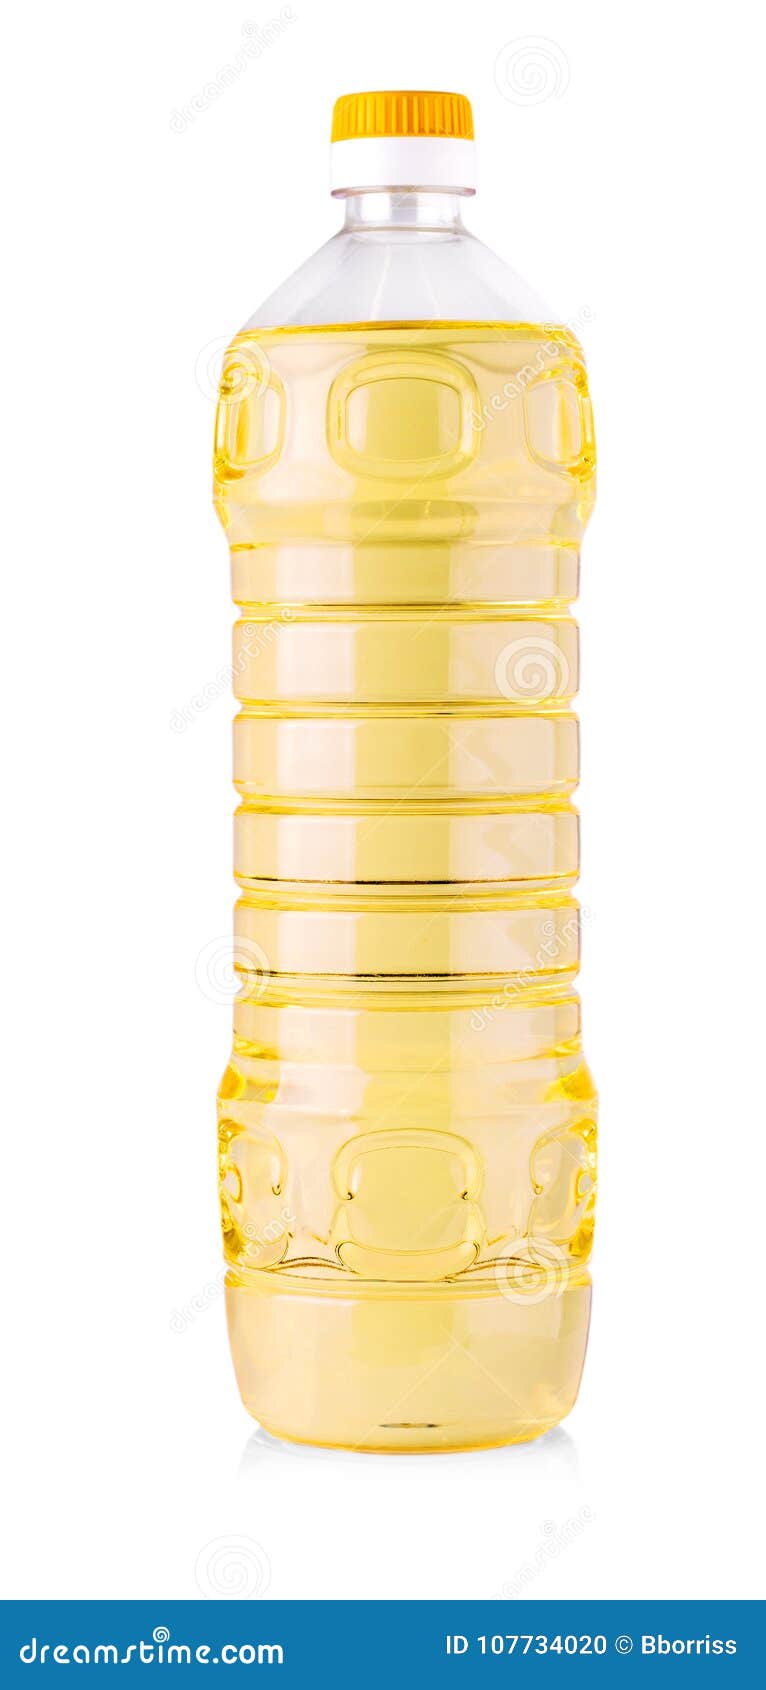 Высота бутылки растительного масла. Высота бутылки подсолнечного масла 1 л. Бутылка подсолнечного масла 1 л размер. Высота бутылки с растительным масло 1л. Литровая бутылка для масла.